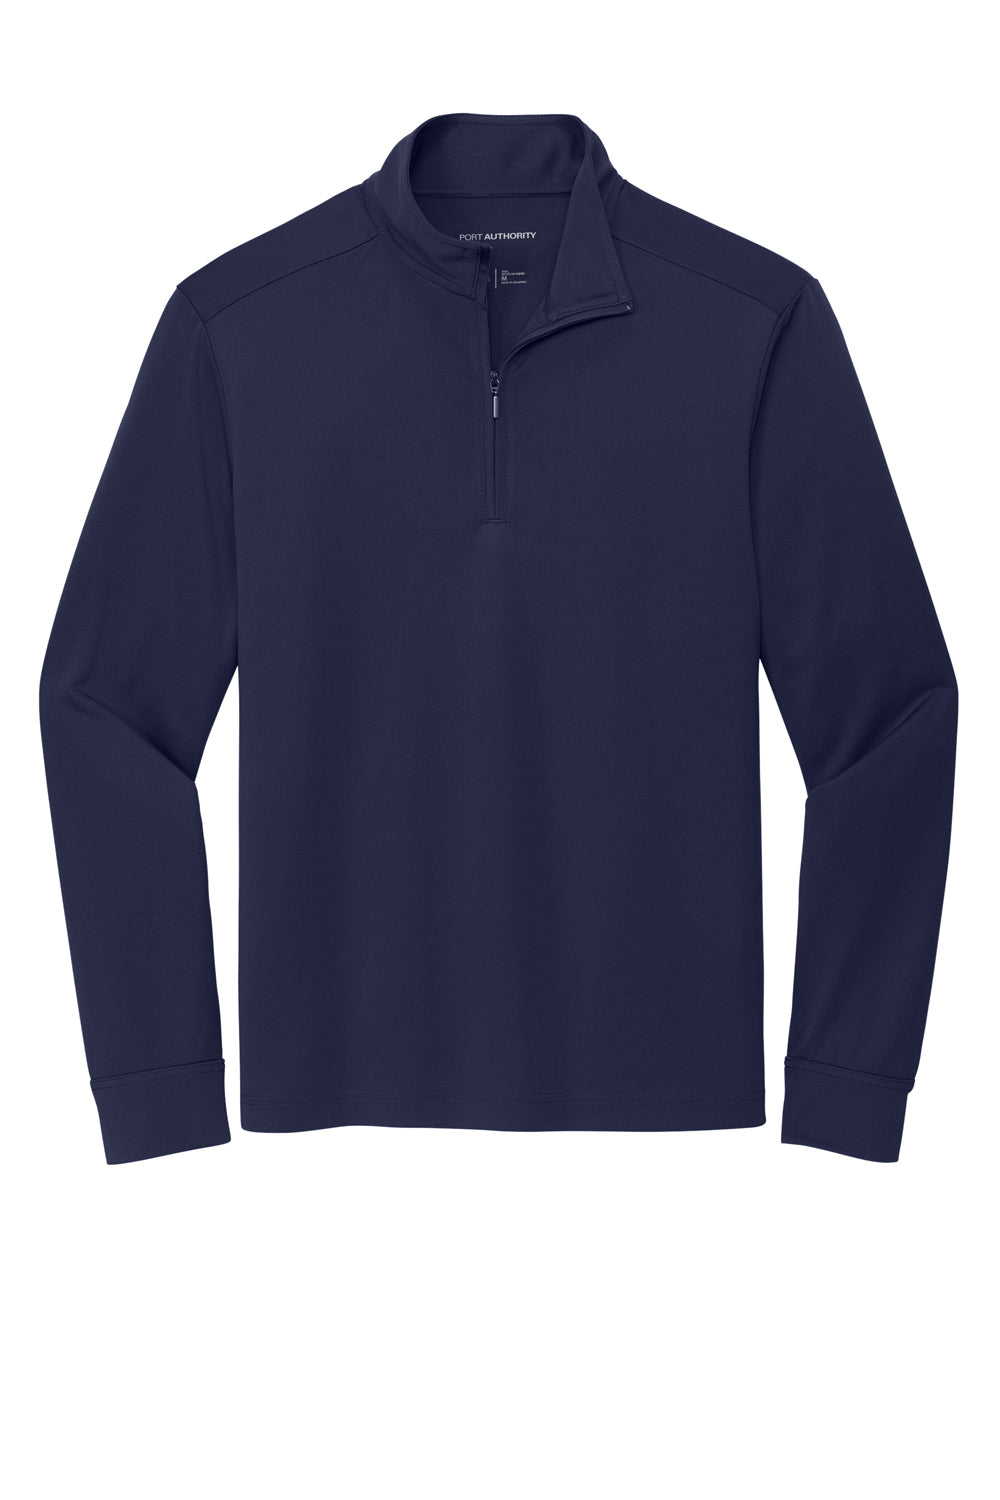 Port Authority K865 C-Free 1/4 Zip Sweatshirt True Navy Blue Flat Front